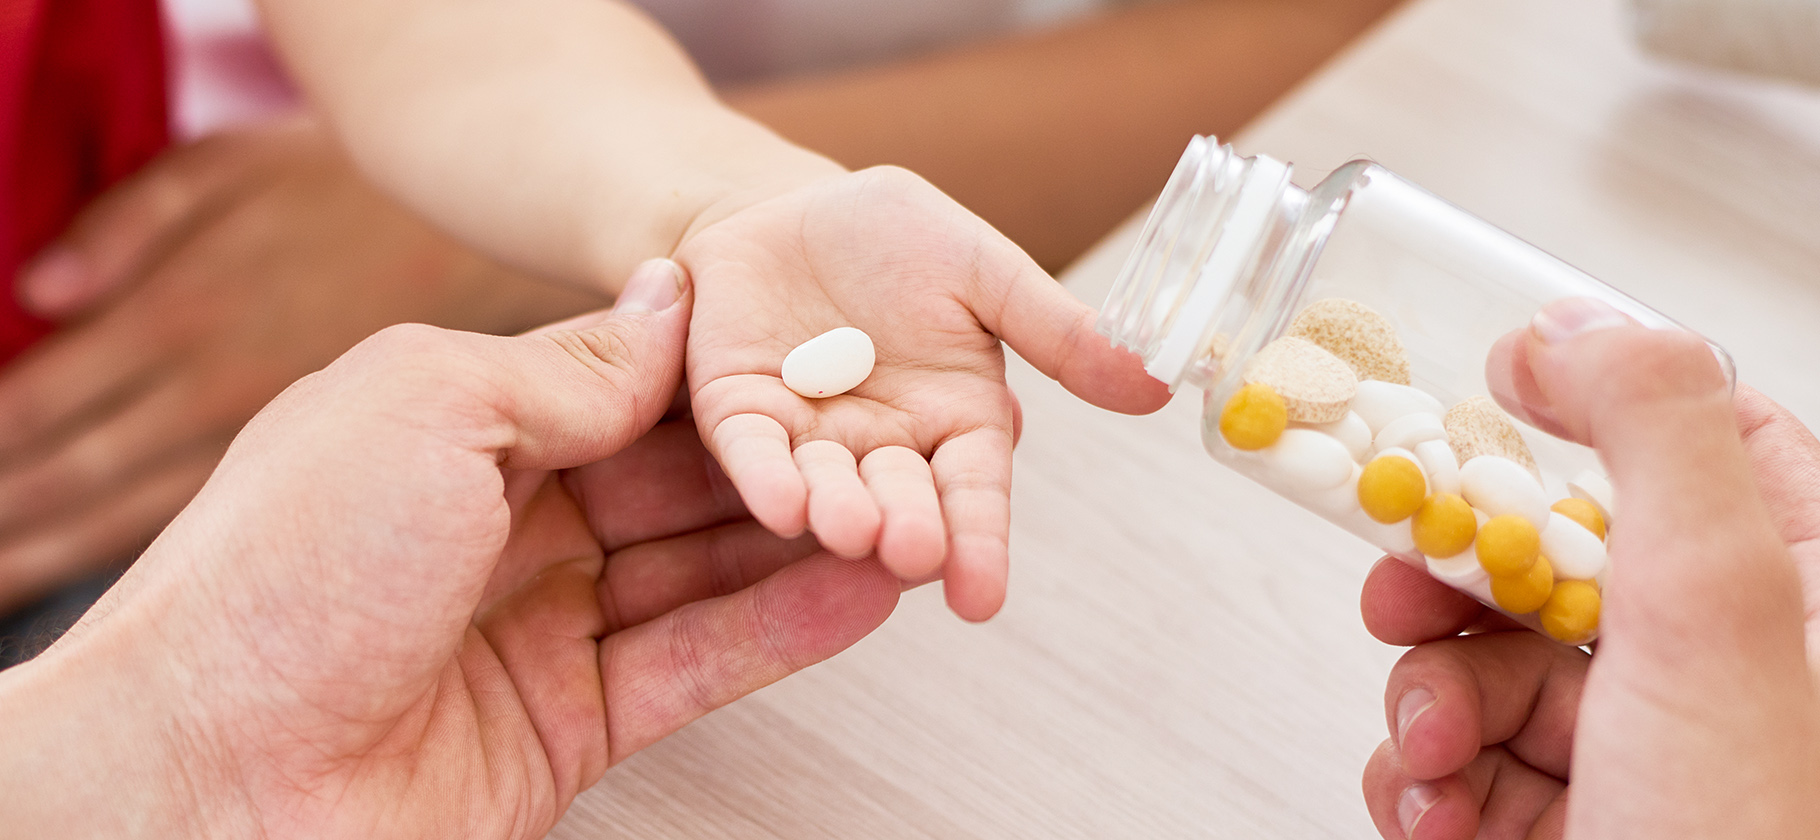 Глицин и АЦЦ: бесполезные и опасные препараты, которые часто выписывают детям